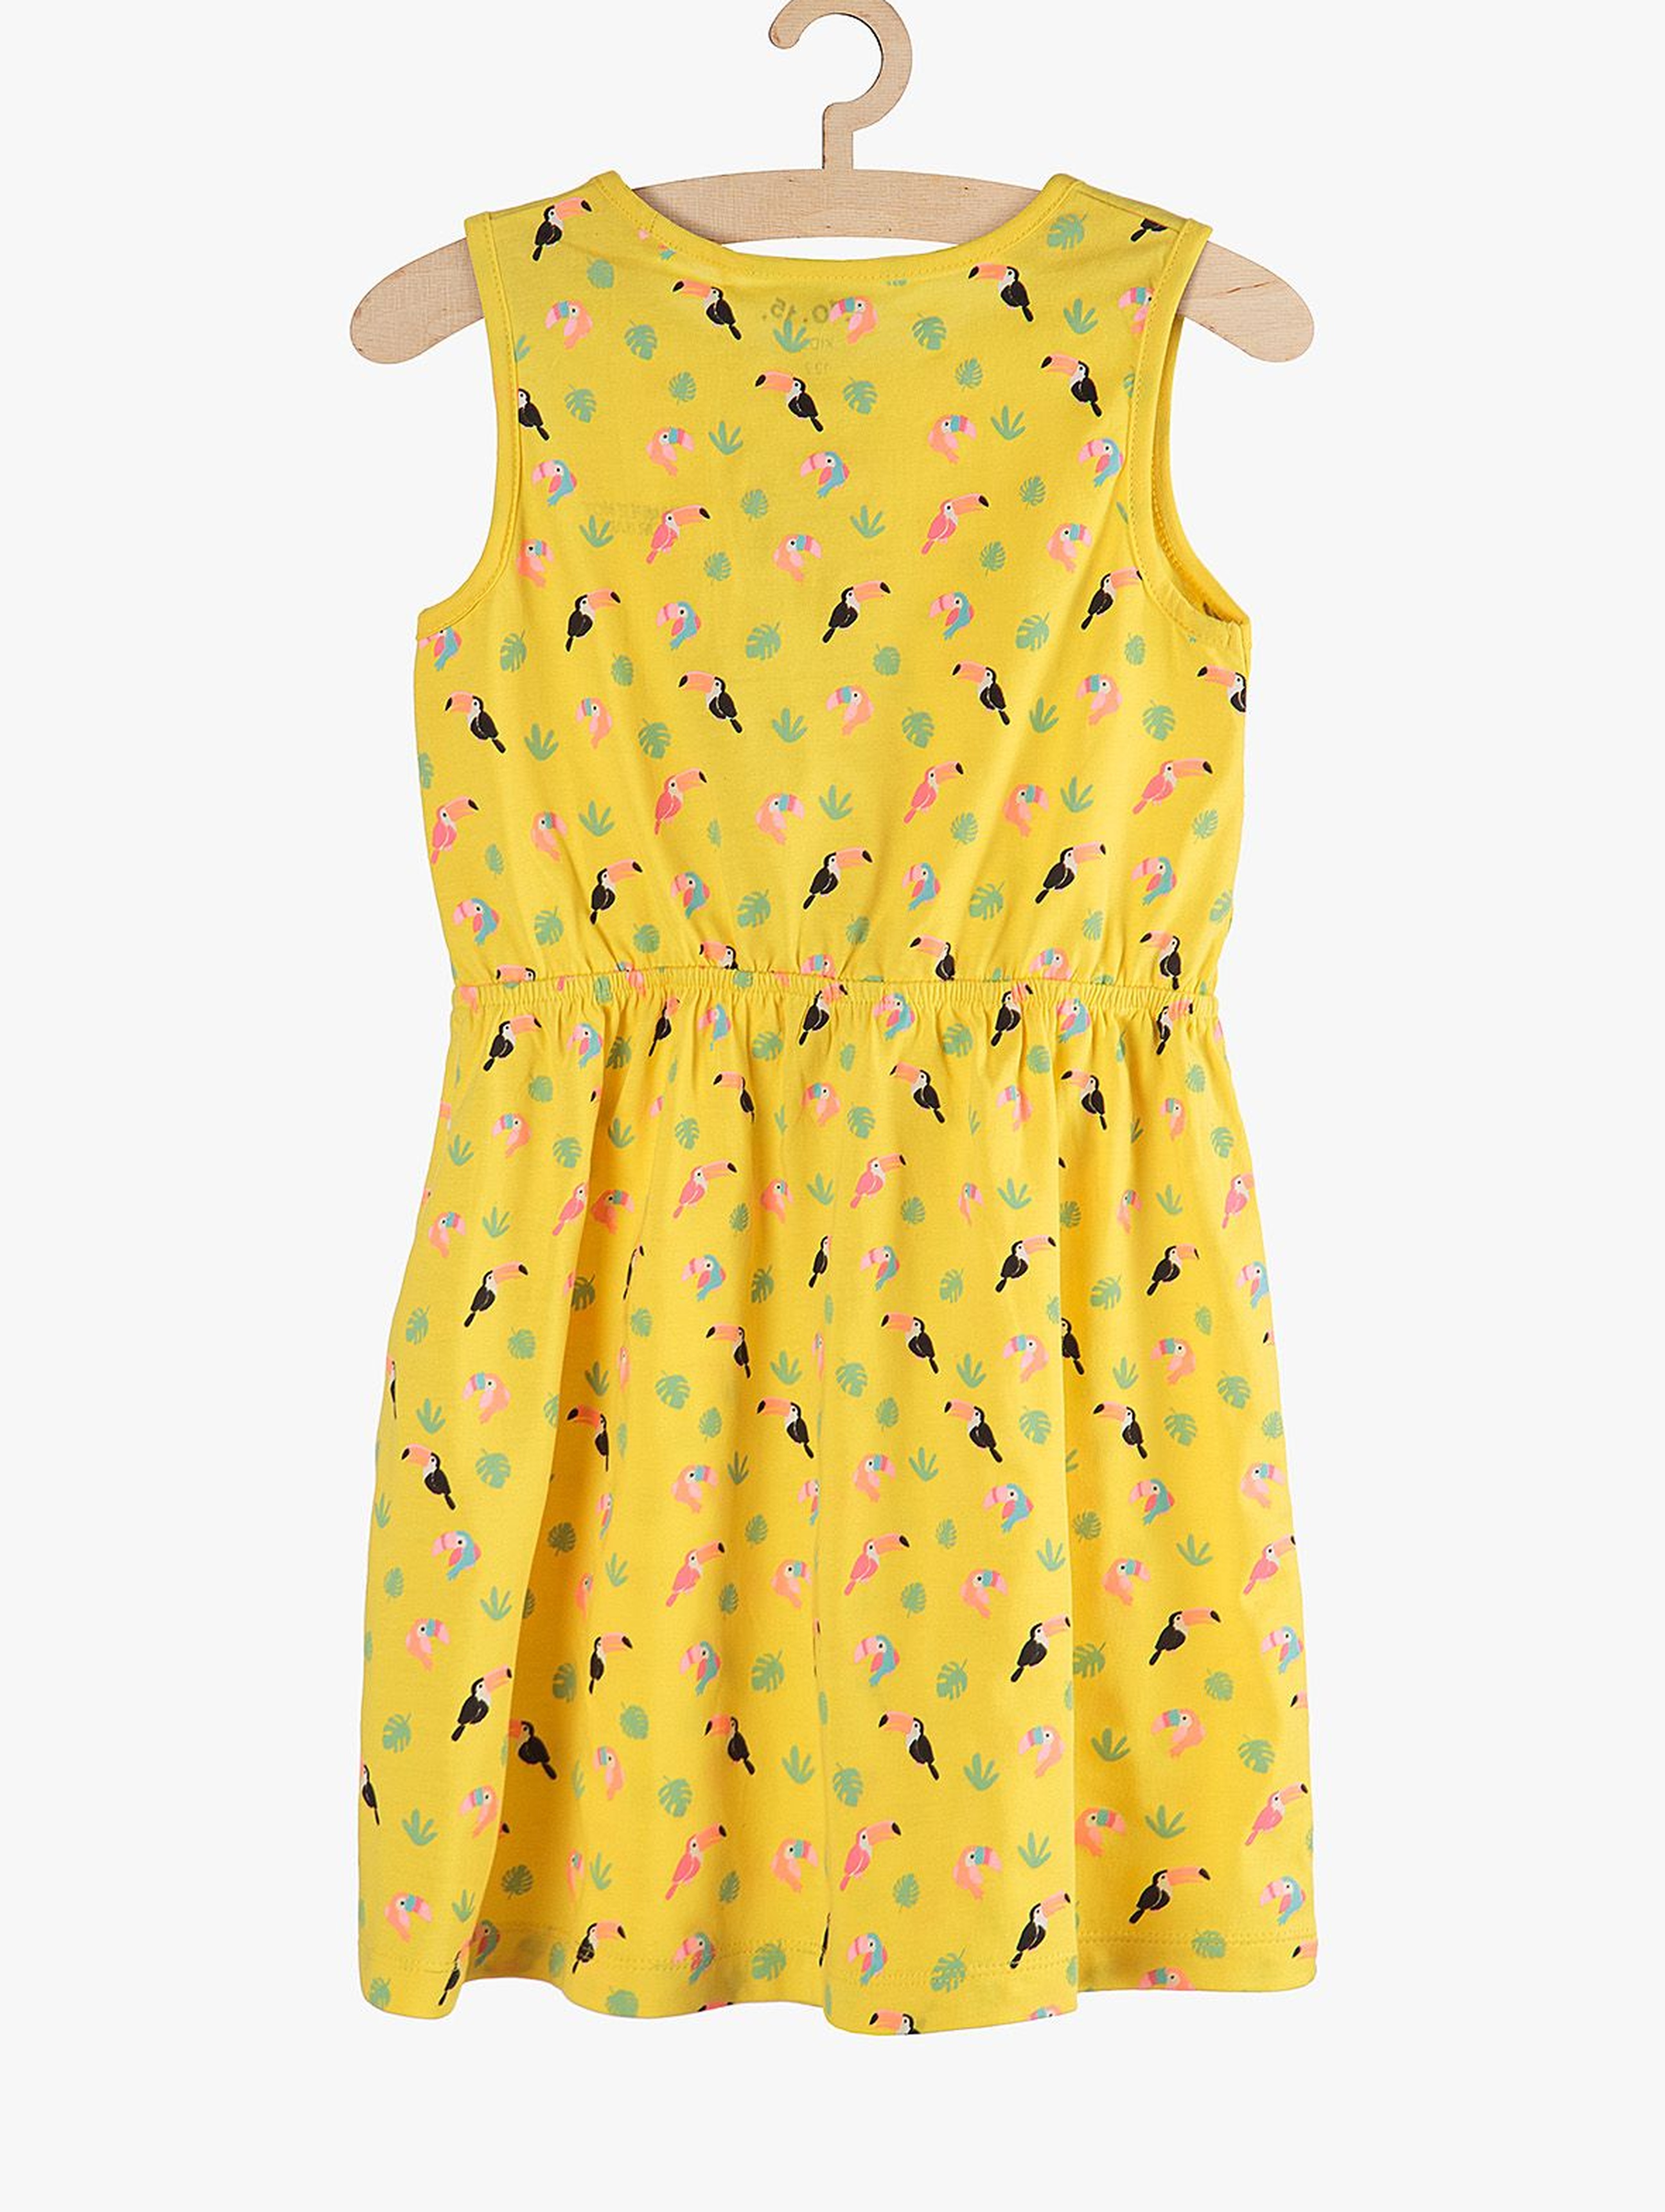 Bawełniana sukienka na lato- żółta w tukany